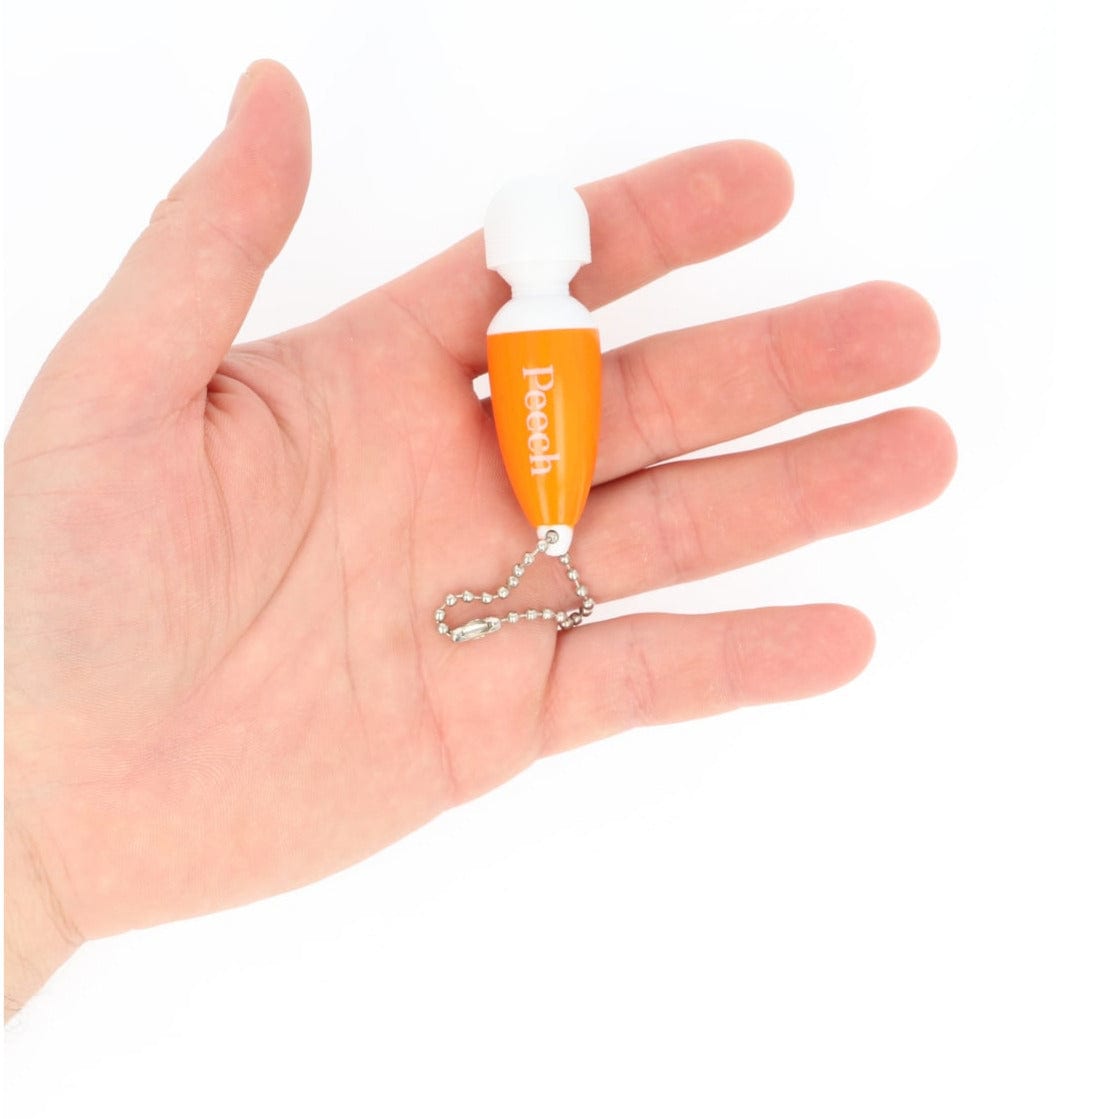 Orange mini vibrerende nøglering fra Peech i hånd